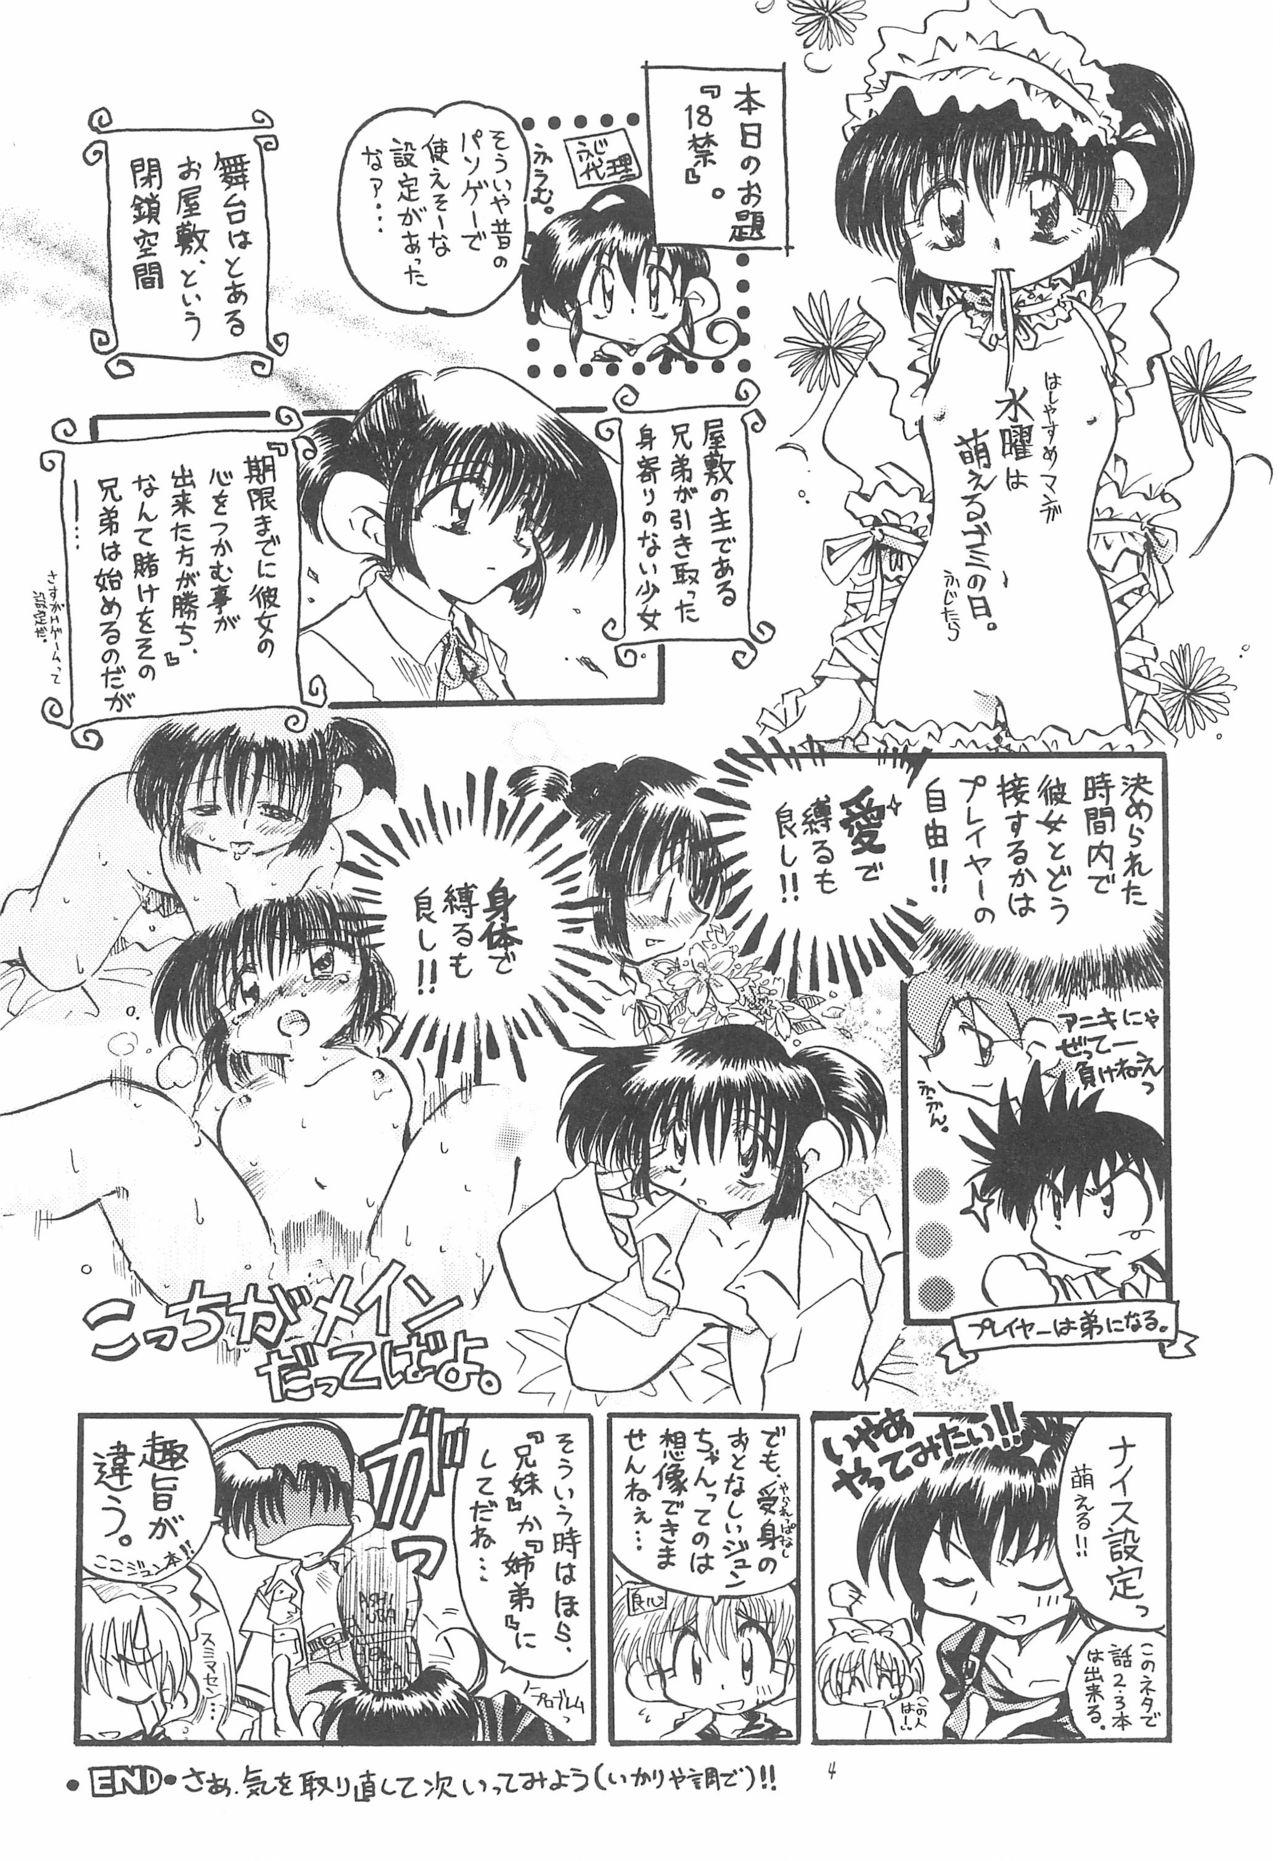 Camgirls Kodomo no Rakuen - Bakusou kyoudai lets and go Sexo - Page 4